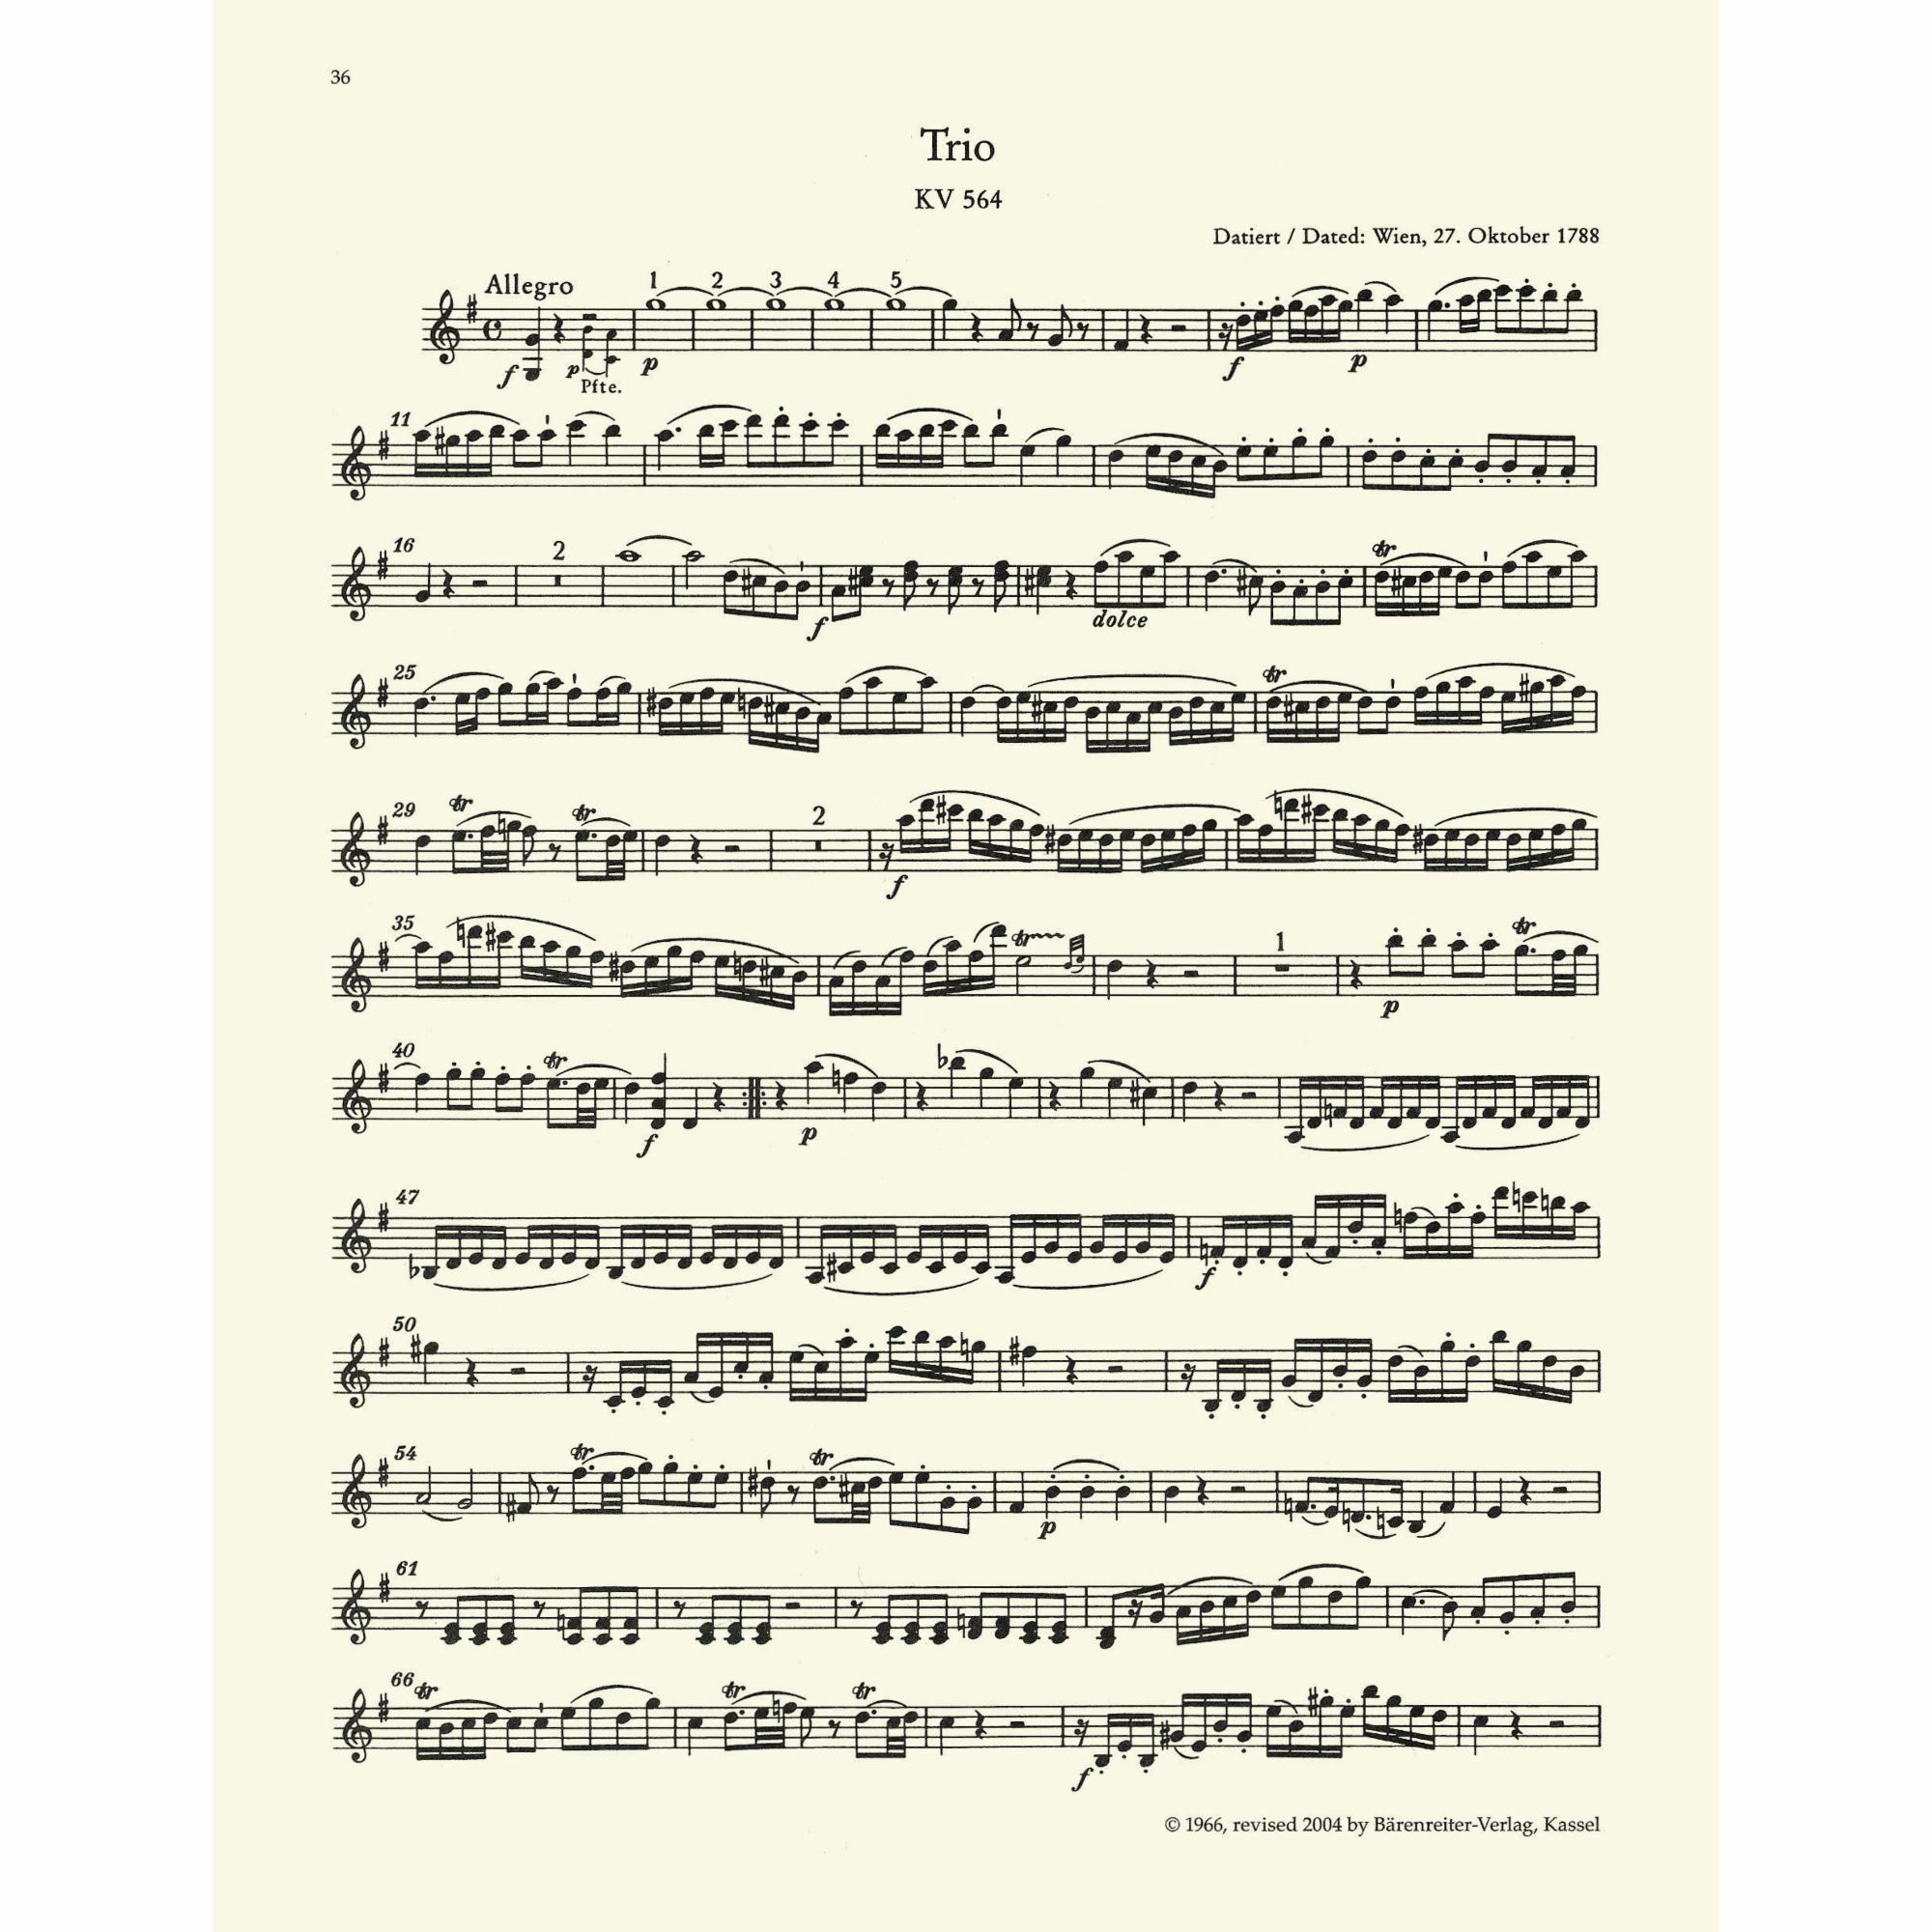 Sample: Violin (Pg. 36)